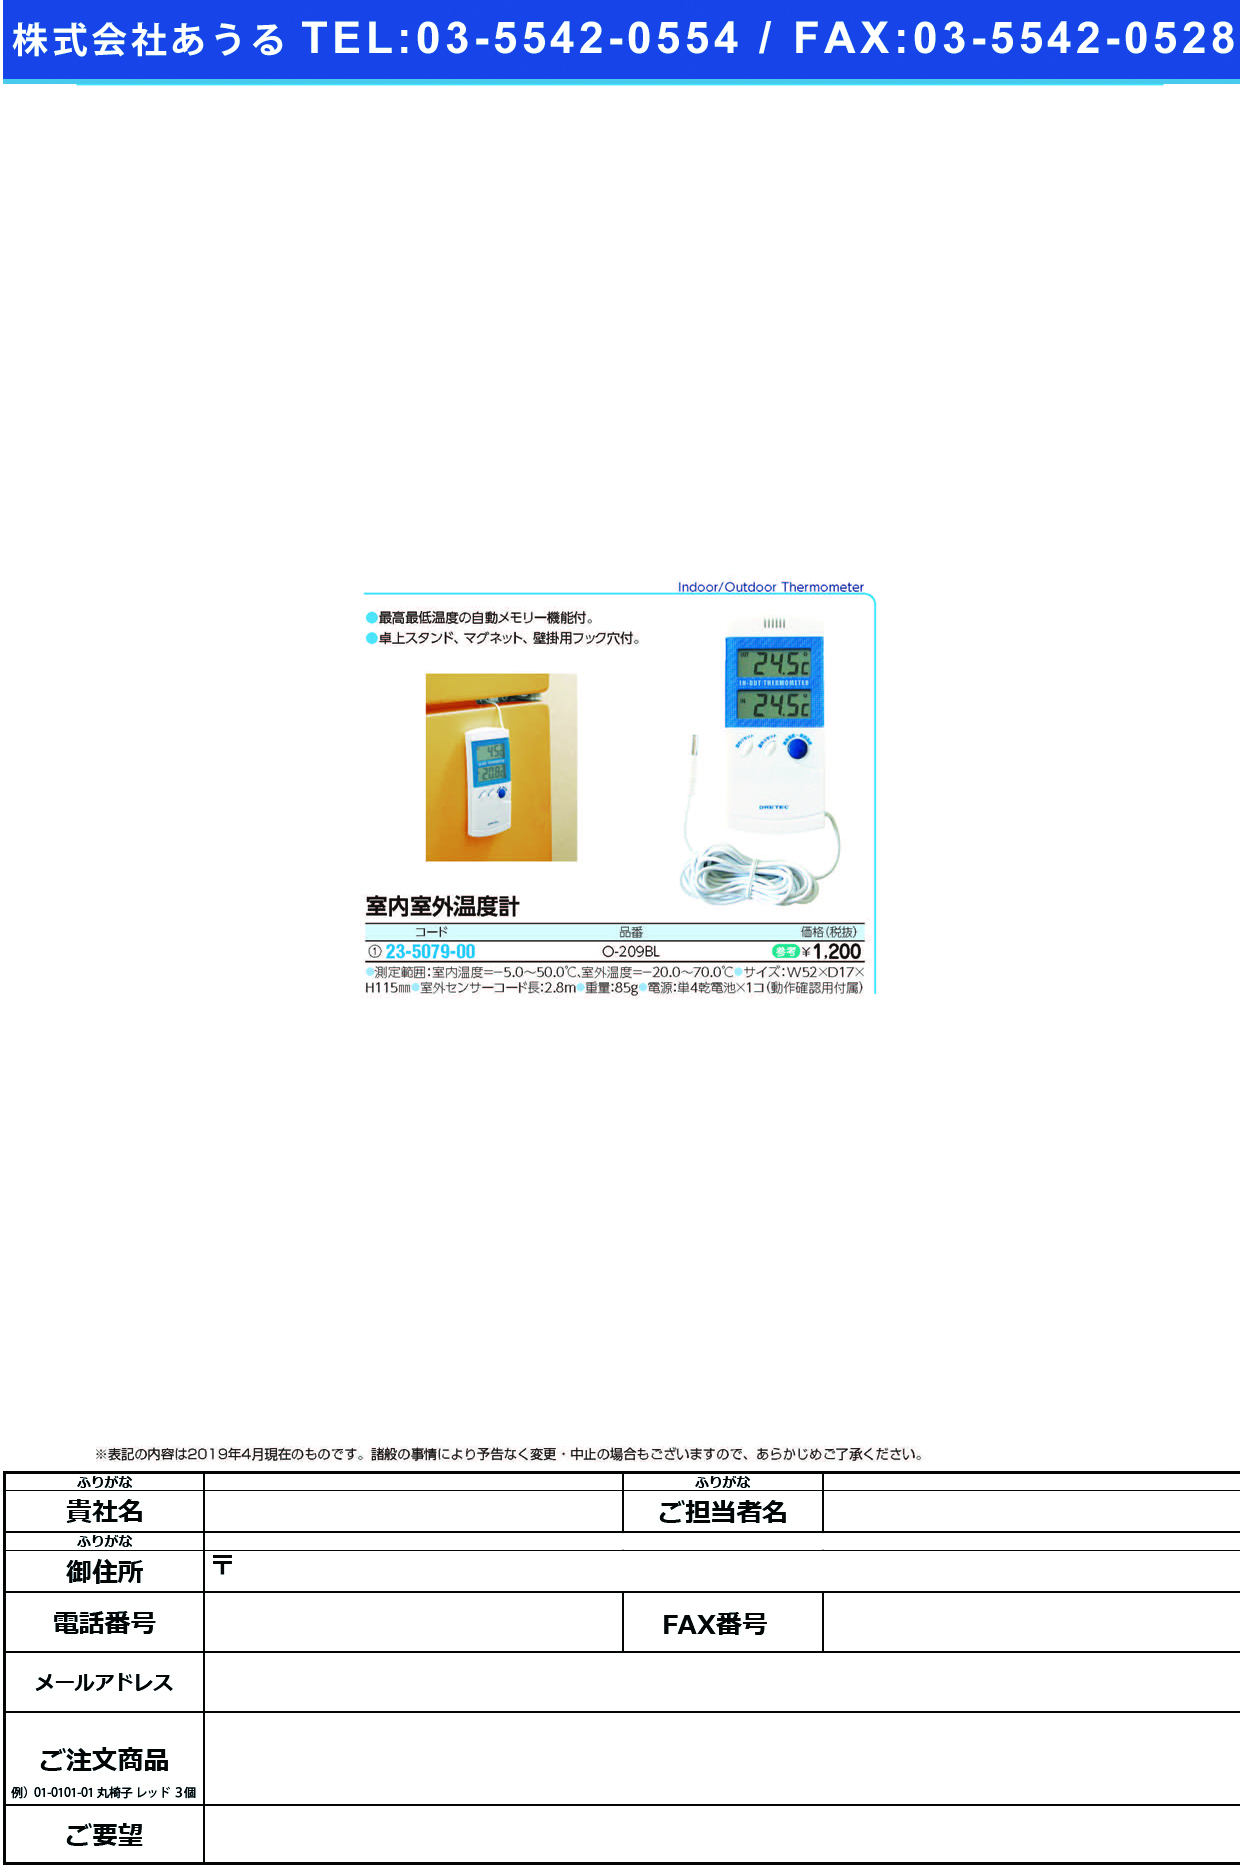 (23-5079-00)室内室外温度計 O-209BL ｼﾂﾅｲｼﾂｶﾞｲｵﾝﾄﾞｹｲ(ドリテック)【1個単位】【2019年カタログ商品】